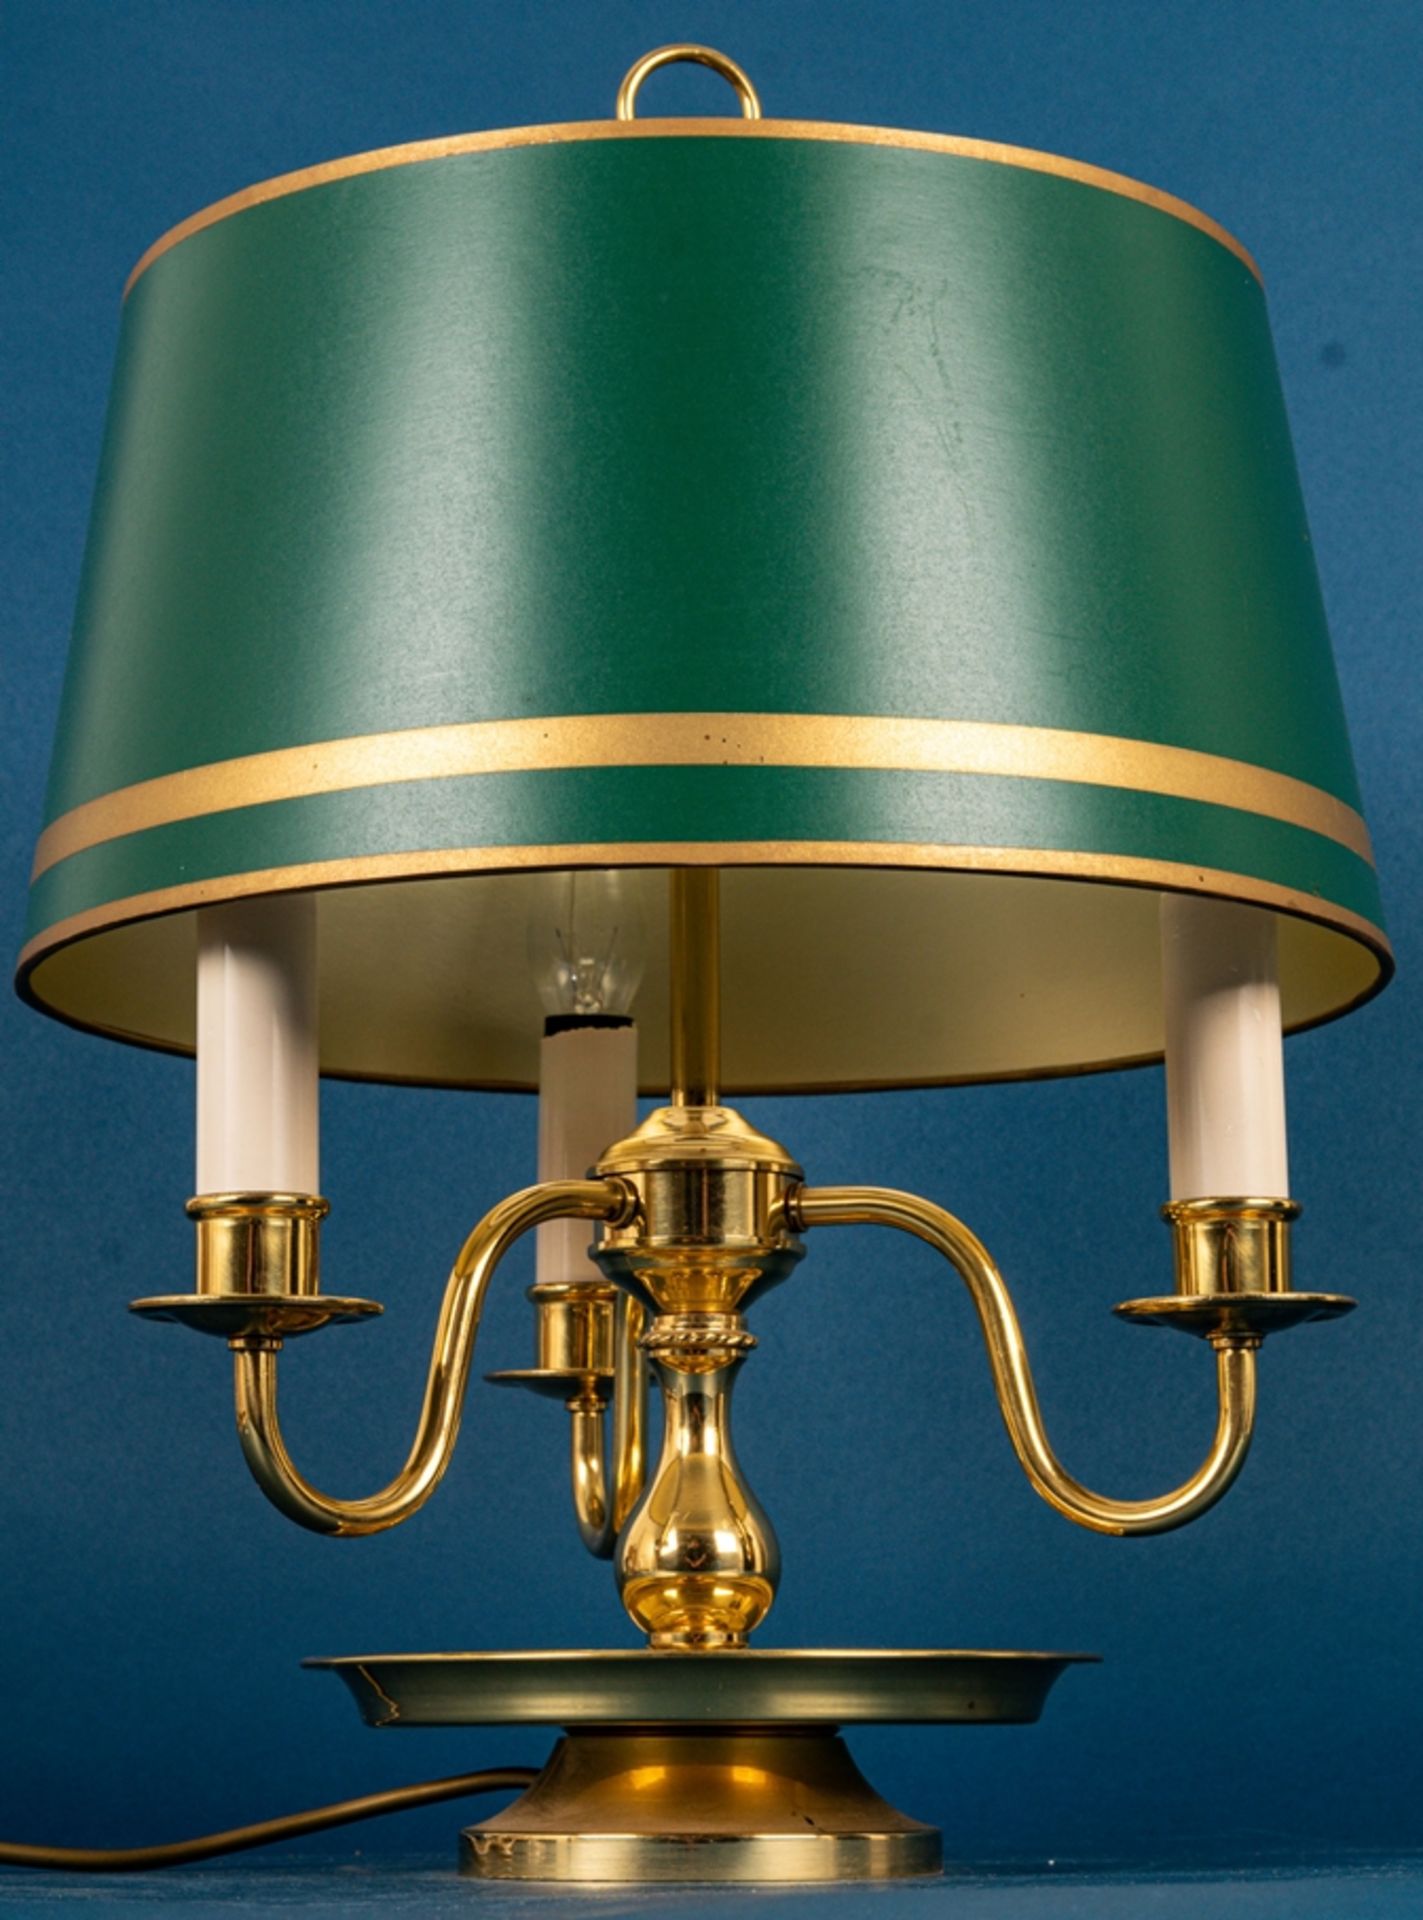 Stilvolle dreiarmige Tischlampe im englischen Stil, Messing, grün-goldener Kuns - Bild 3 aus 7